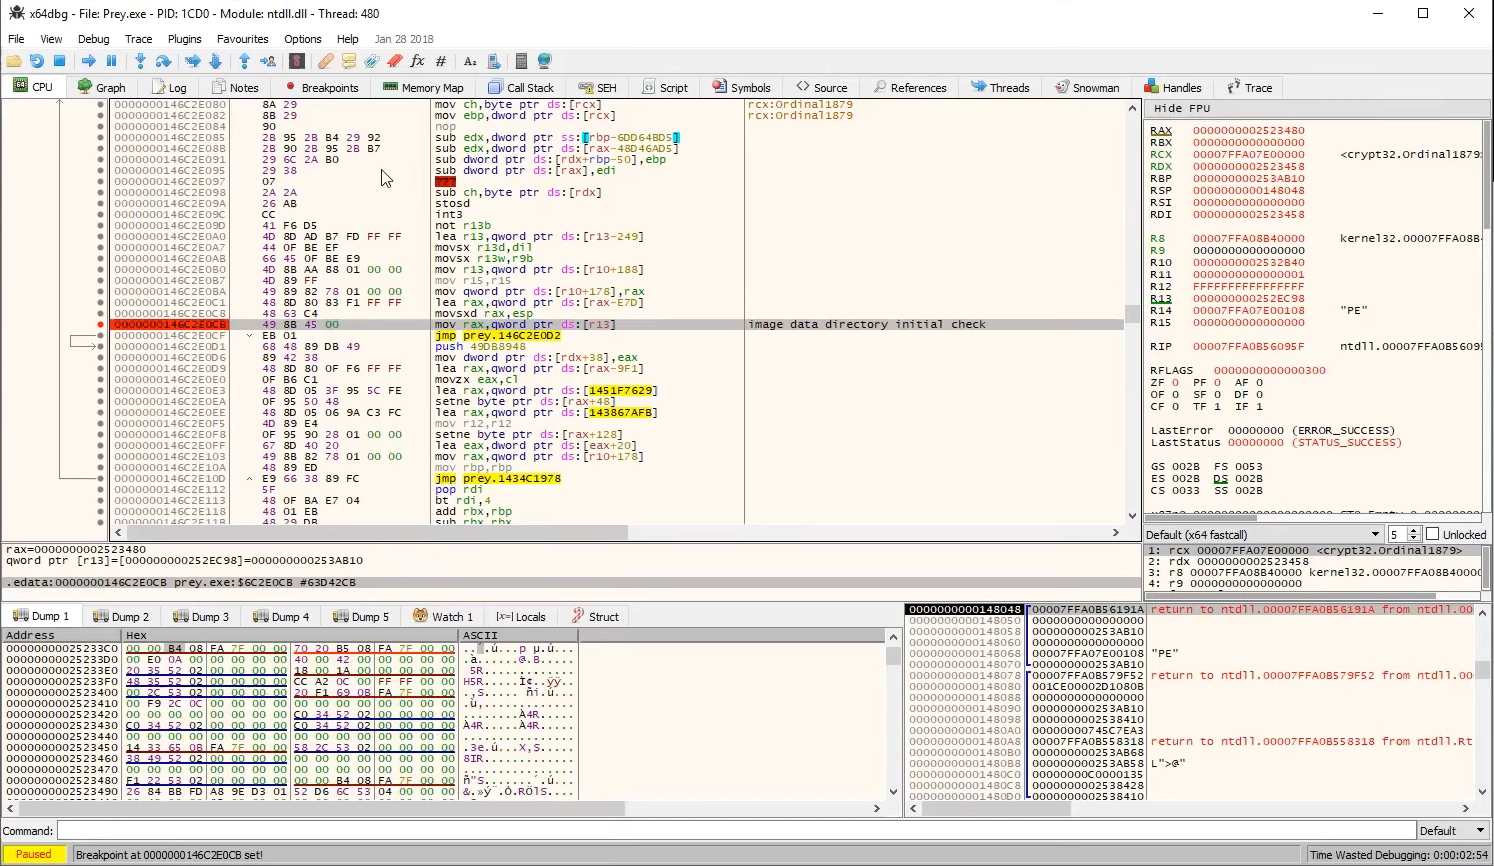 Poking around code screenshot